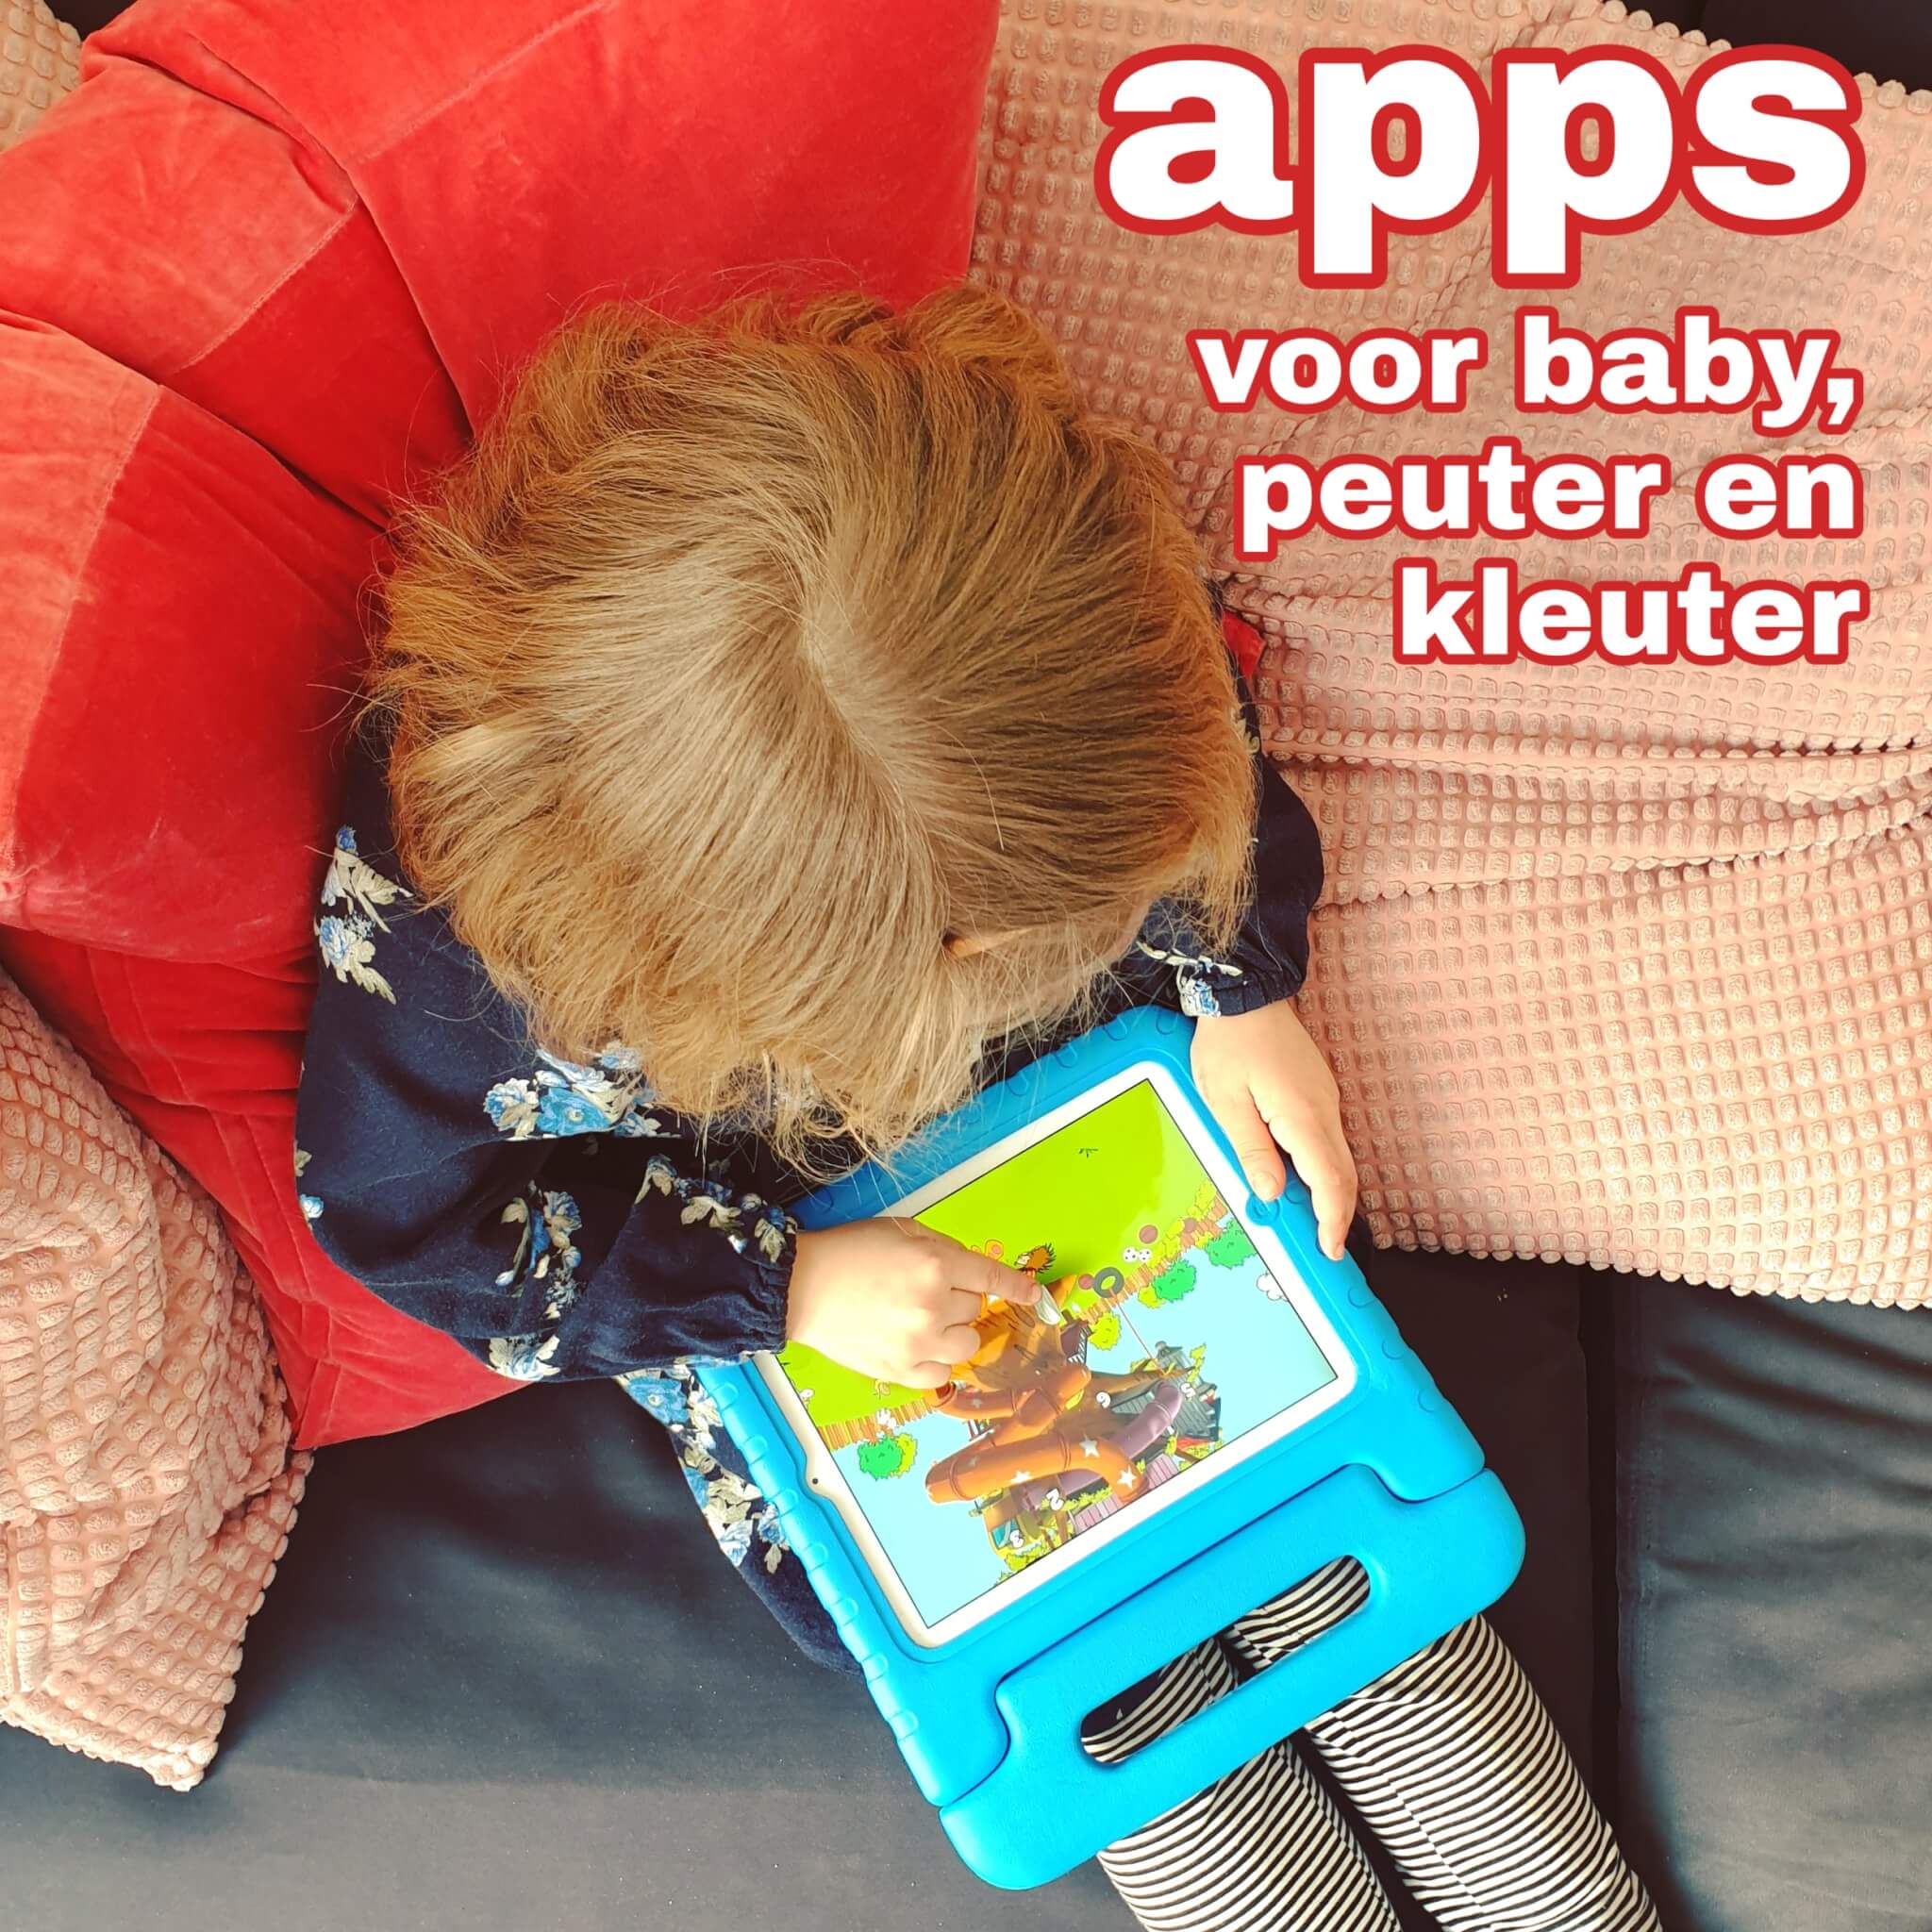 Apps voor kleine kinderen: baby, peuter en kleuter op tablet en smartphone Leuk met